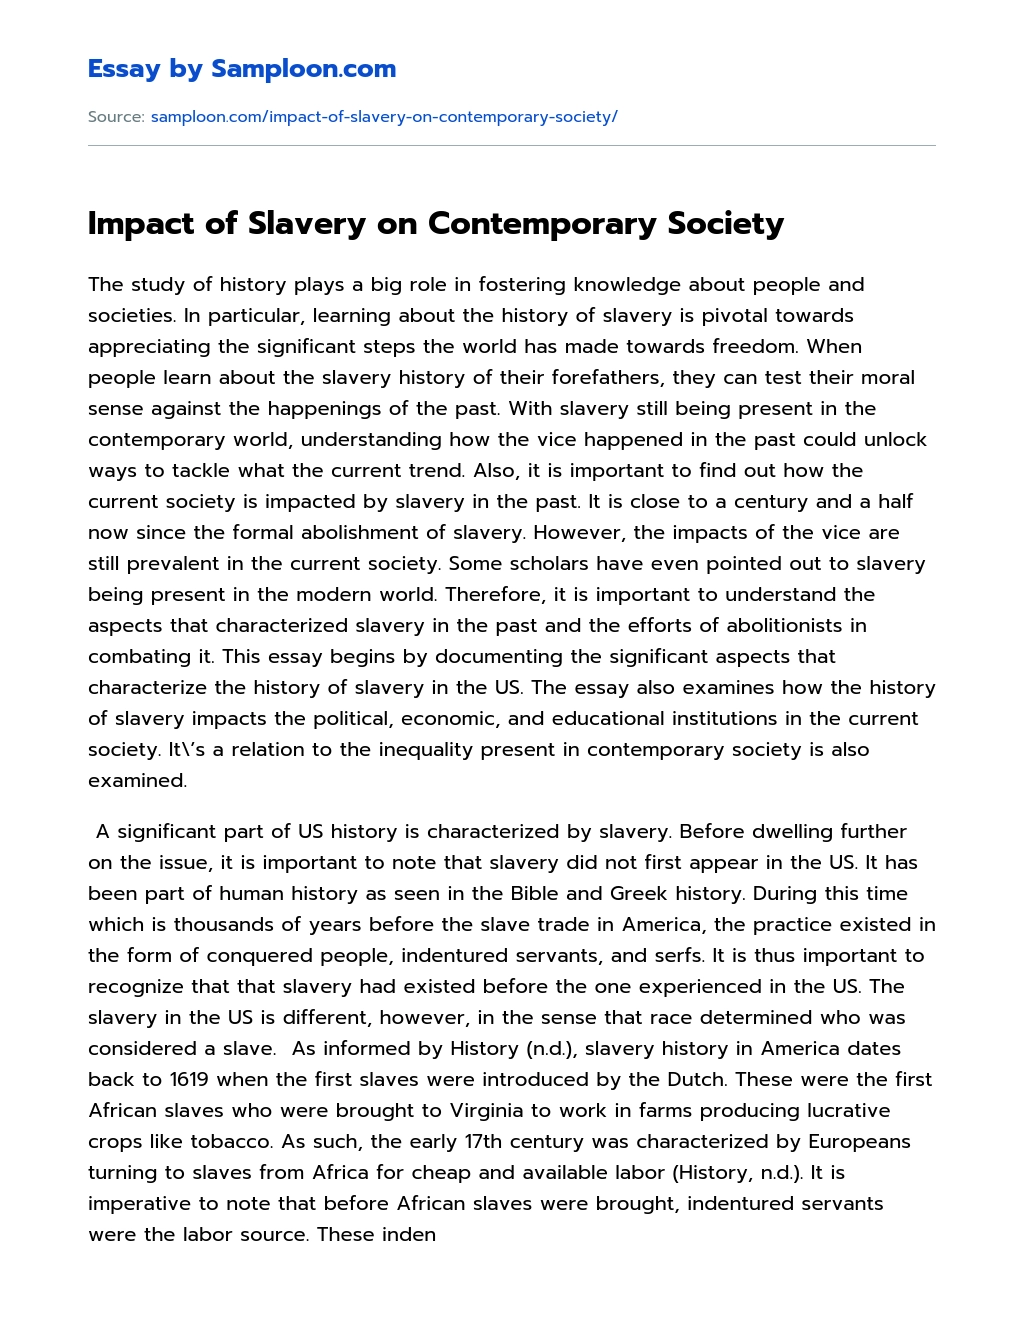 Impact of Slavery on Contemporary Society essay